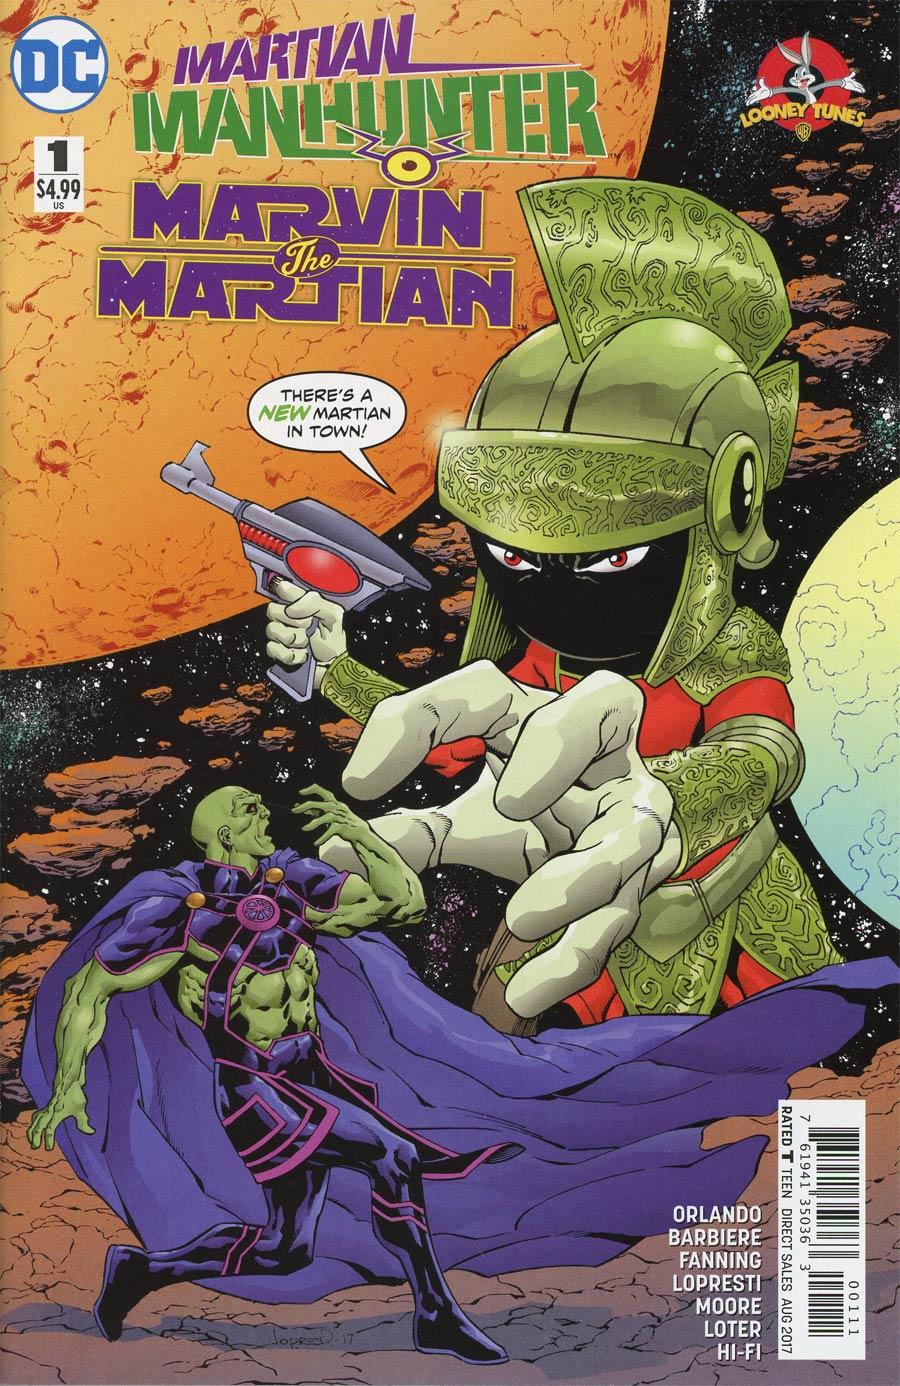 Martian Manhunter Marvin The Martian Special Vol. 1 #1